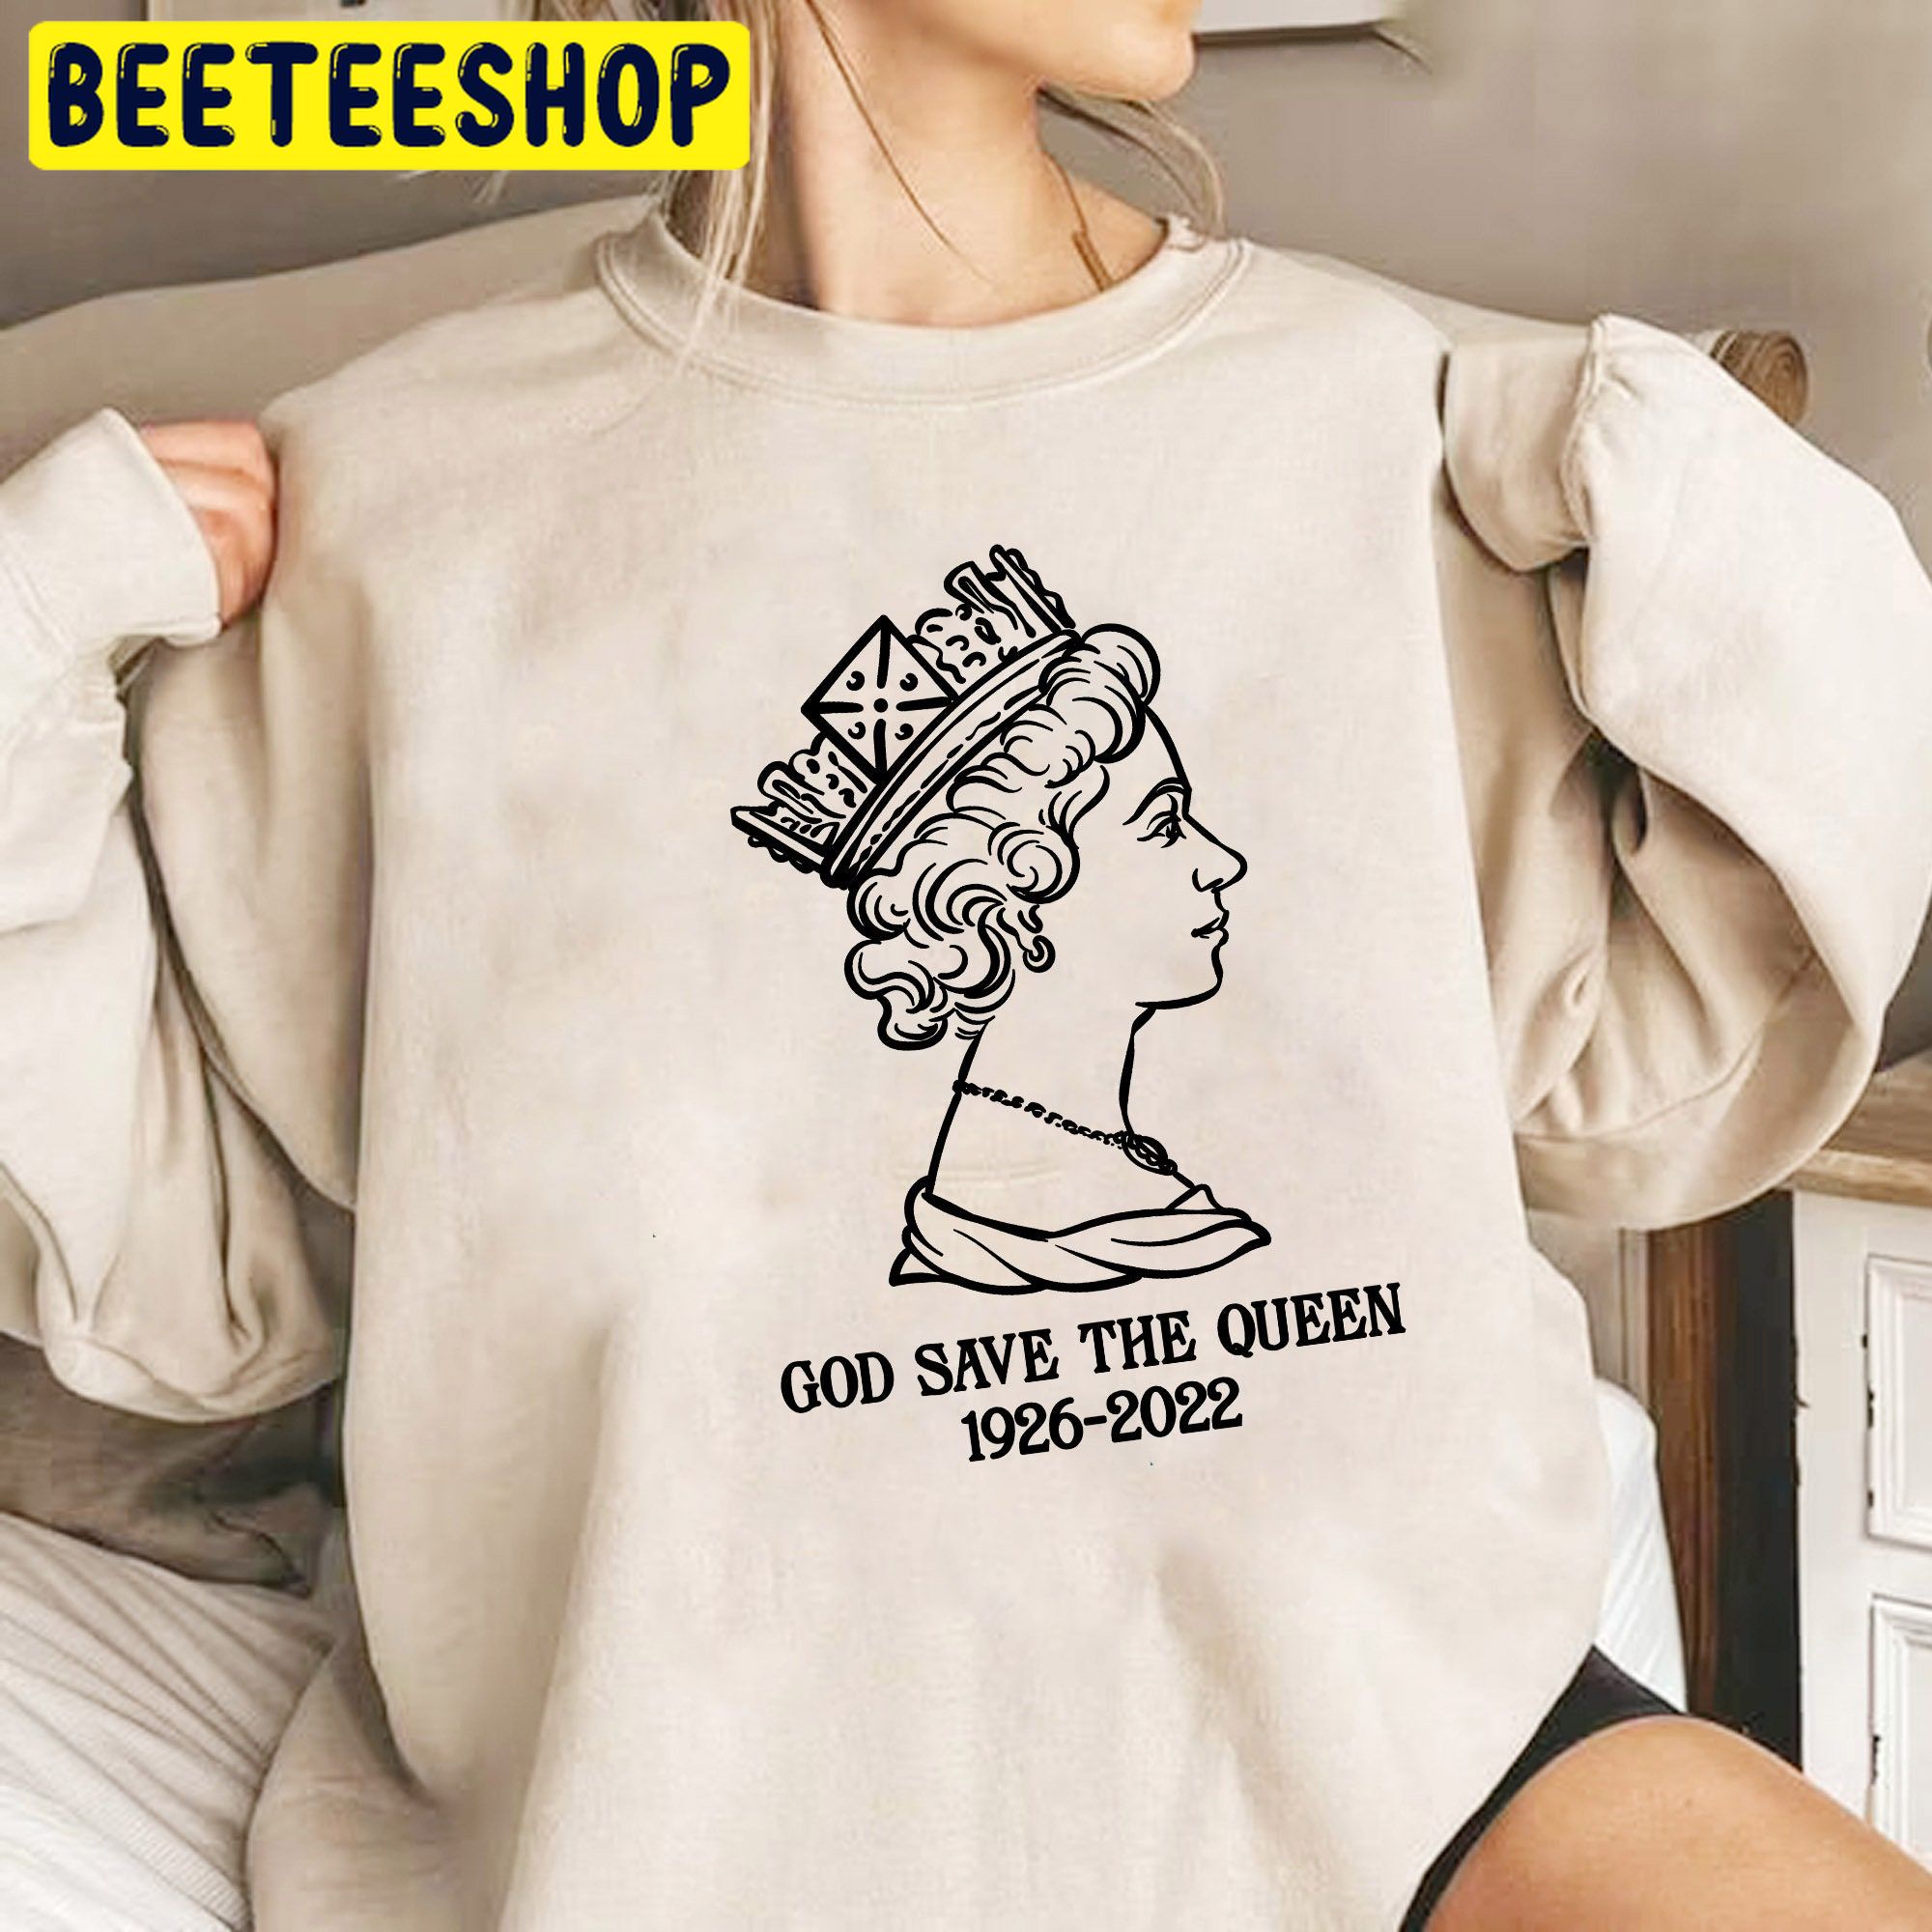 Rip Queen Elizabeth Ii Trending Unsiex Shirt - Beeteeshop